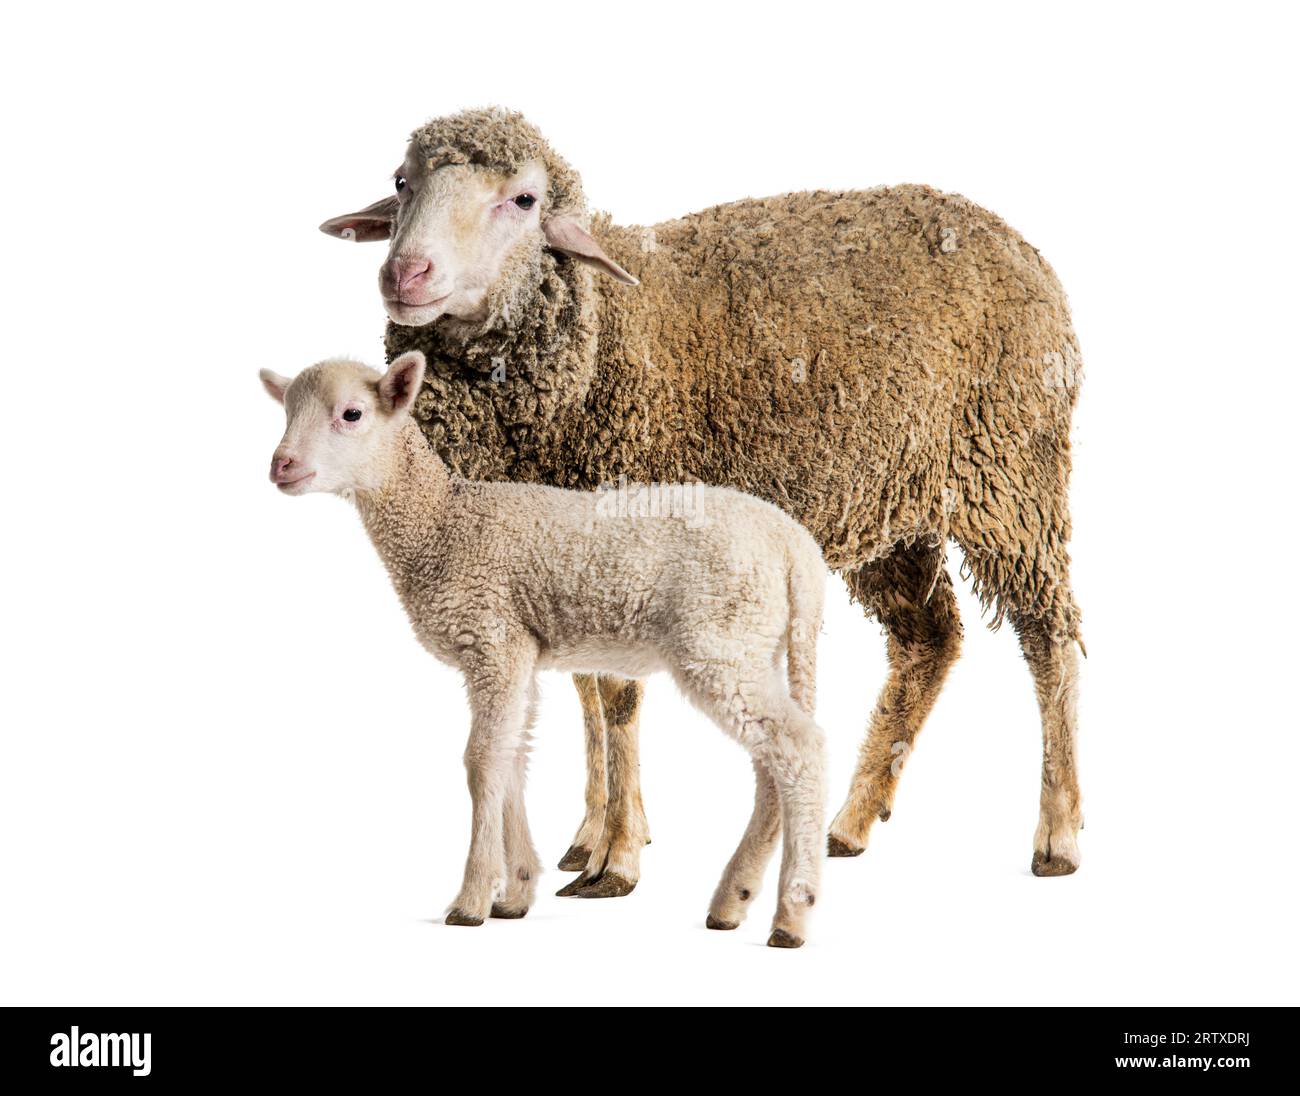 Brebis Sopravissana mouton avec son agneau, isolé sur blanc Banque D'Images